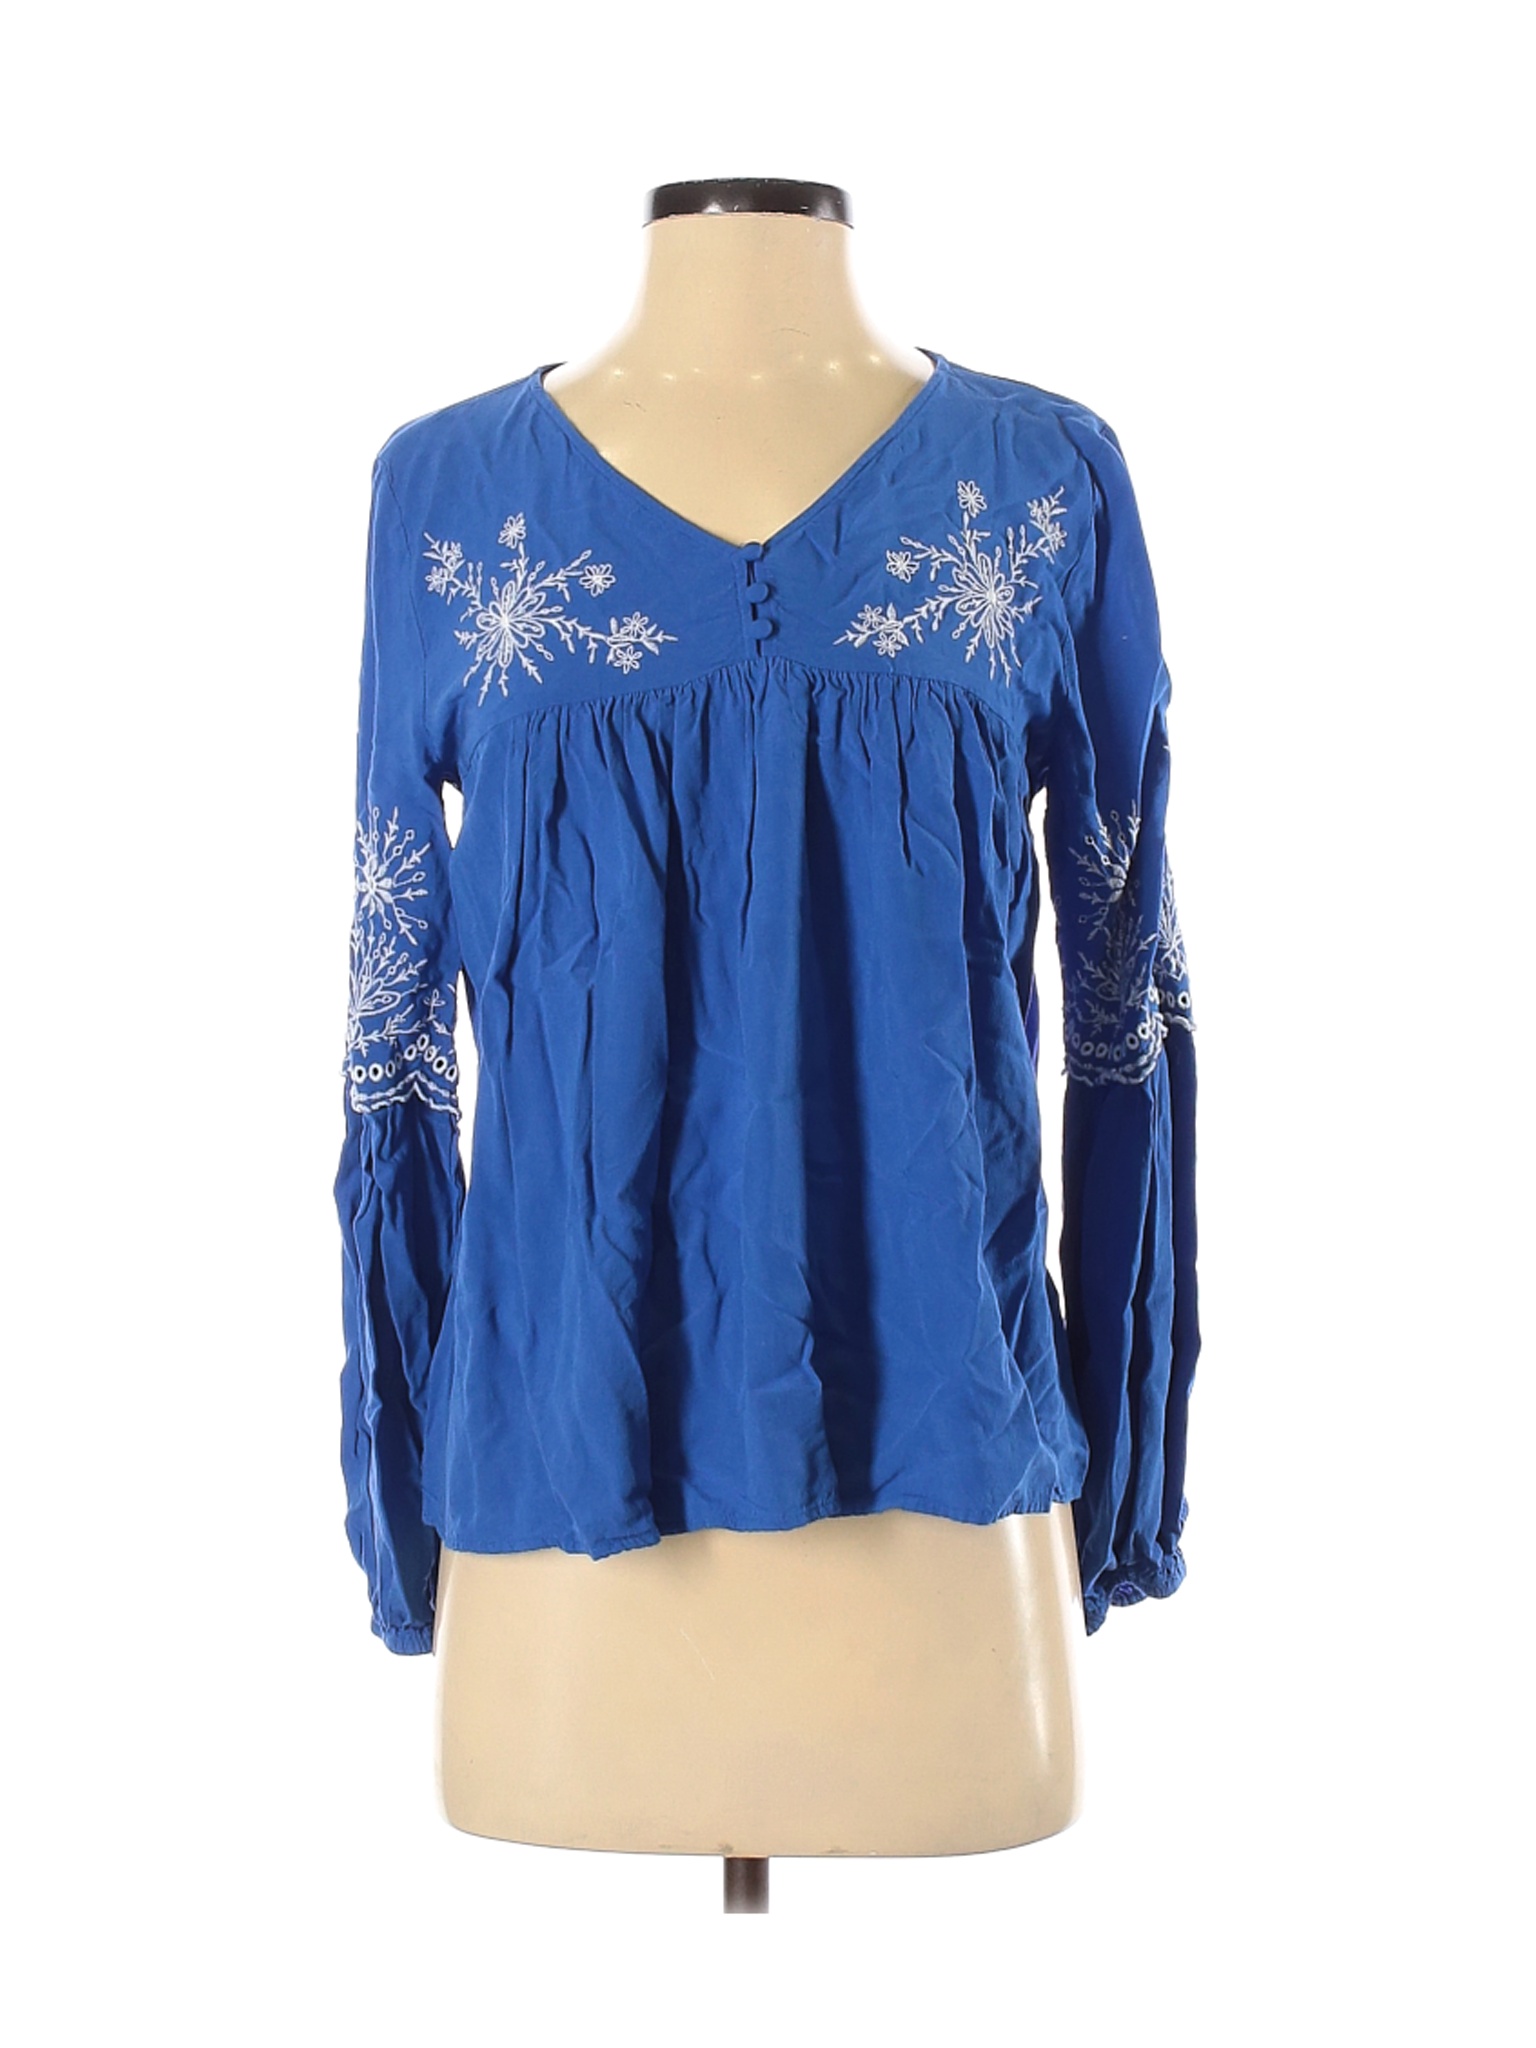 Ann Taylor LOFT Women Blue Long Sleeve Blouse S | eBay